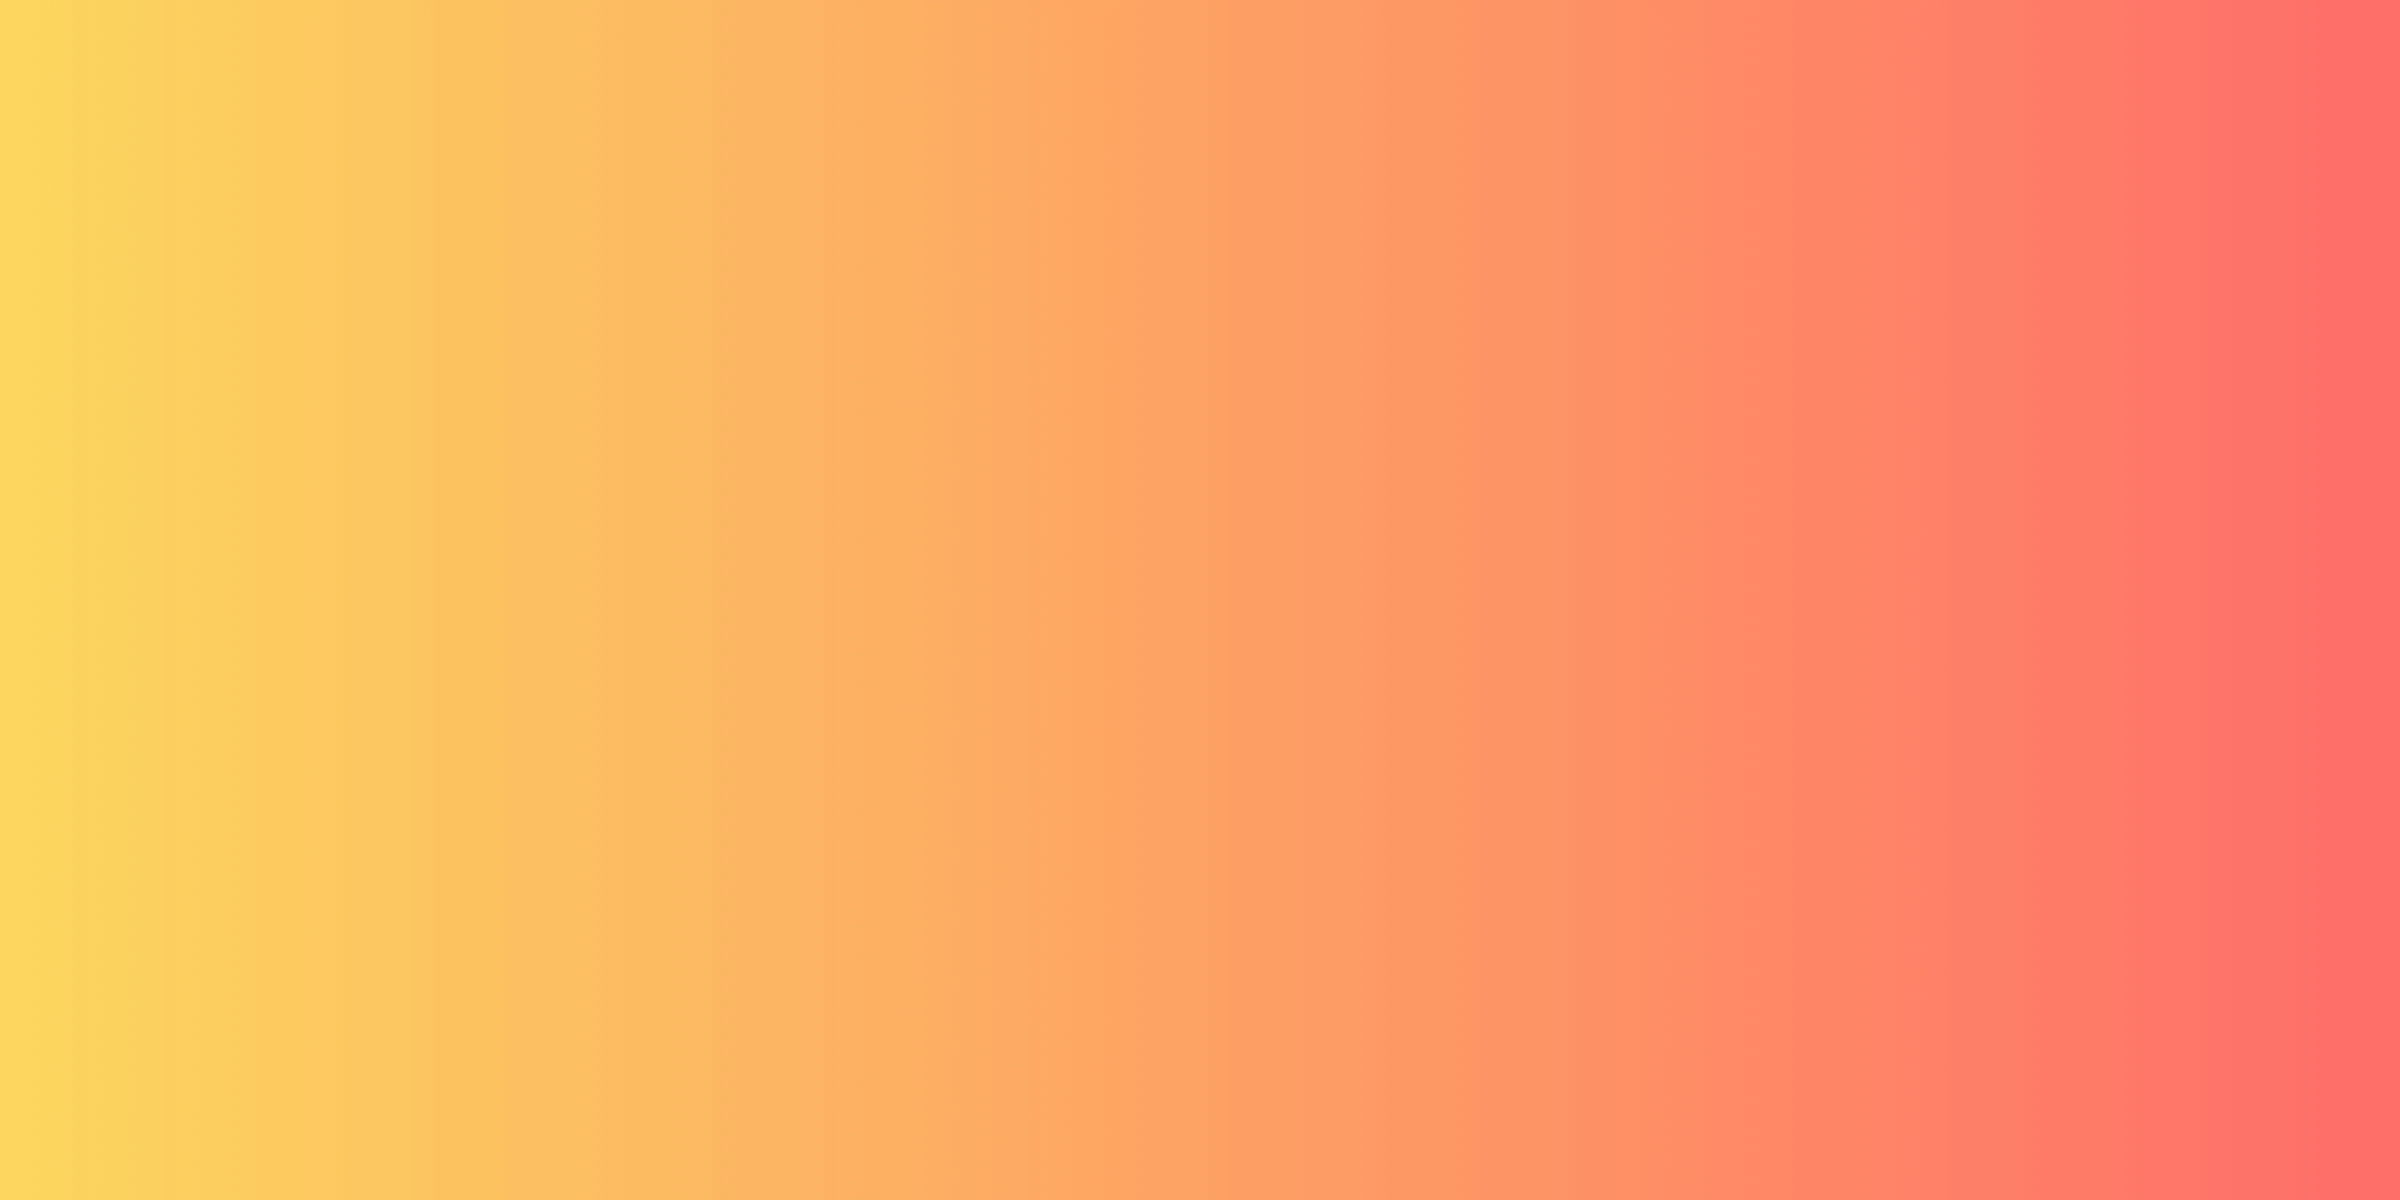 Nền nhuộm gradient hồng là sự lựa chọn tuyệt vời để thêm điểm nhấn cho thiết kế của bạn. Với trình tạo nền gradient CSS, bạn có thể tạo ra những bức tranh nền tuyệt đẹp, đầy màu sắc và ấn tượng. Đừng bỏ lỡ cơ hội để tạo ra những kiểu nền gradient đẹp mắt nhất với công cụ đơn giản này.